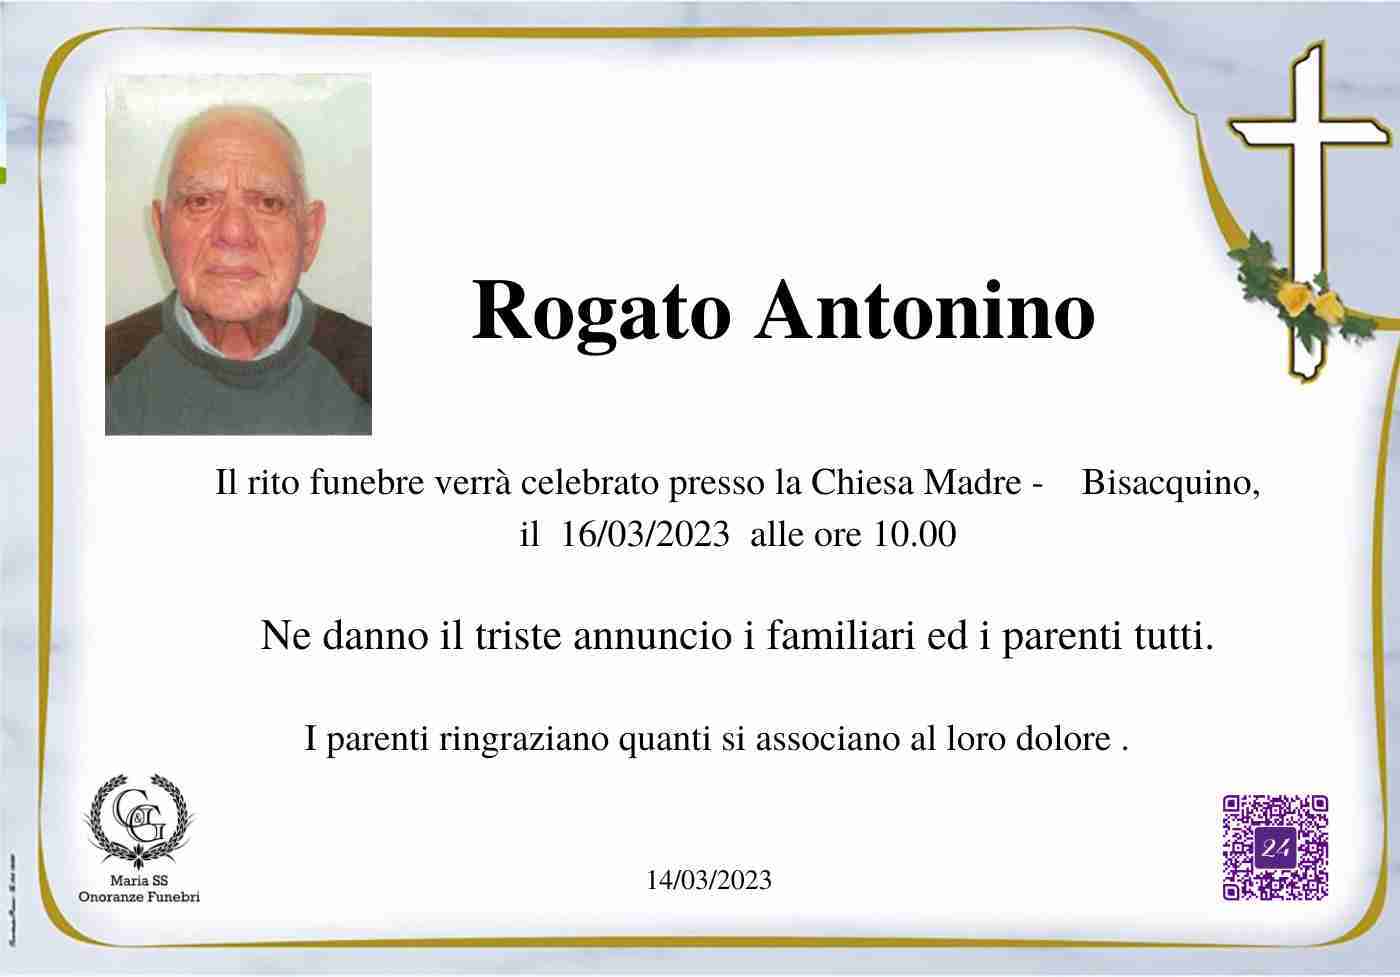 Antonino Rogato